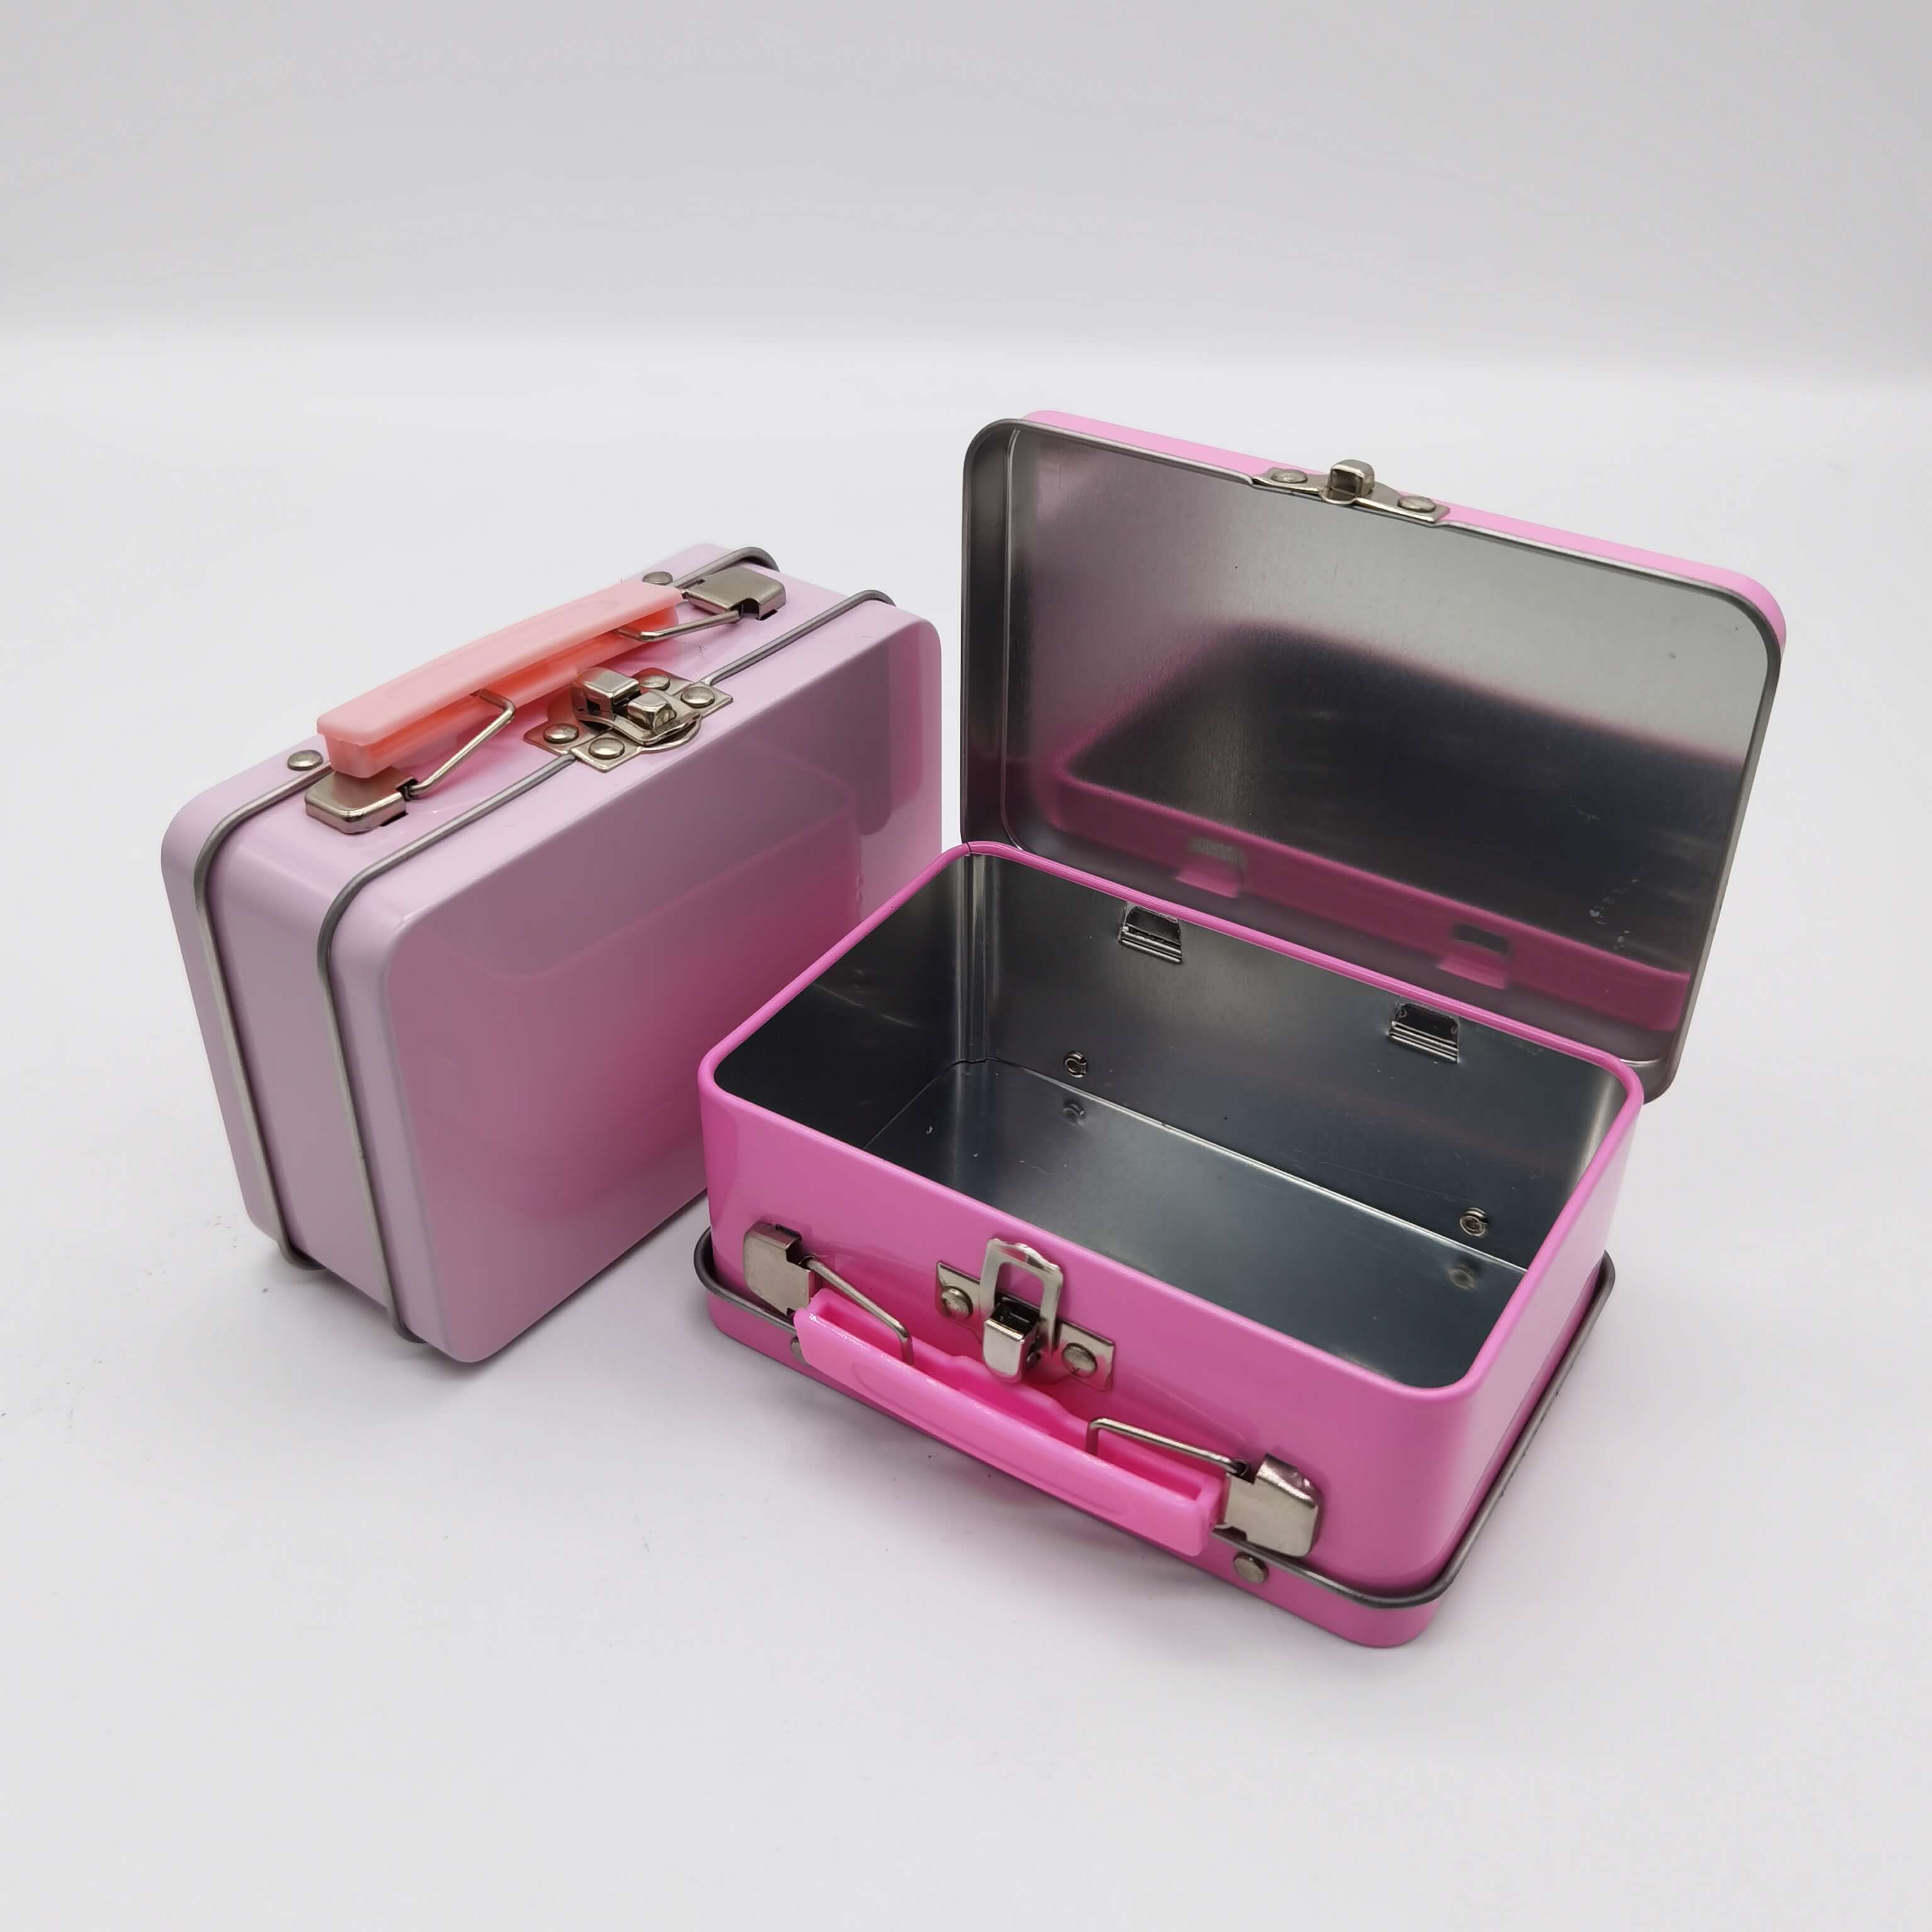 Lip Gloss packing iron box, hand-held iron box, hand-held can, tin box